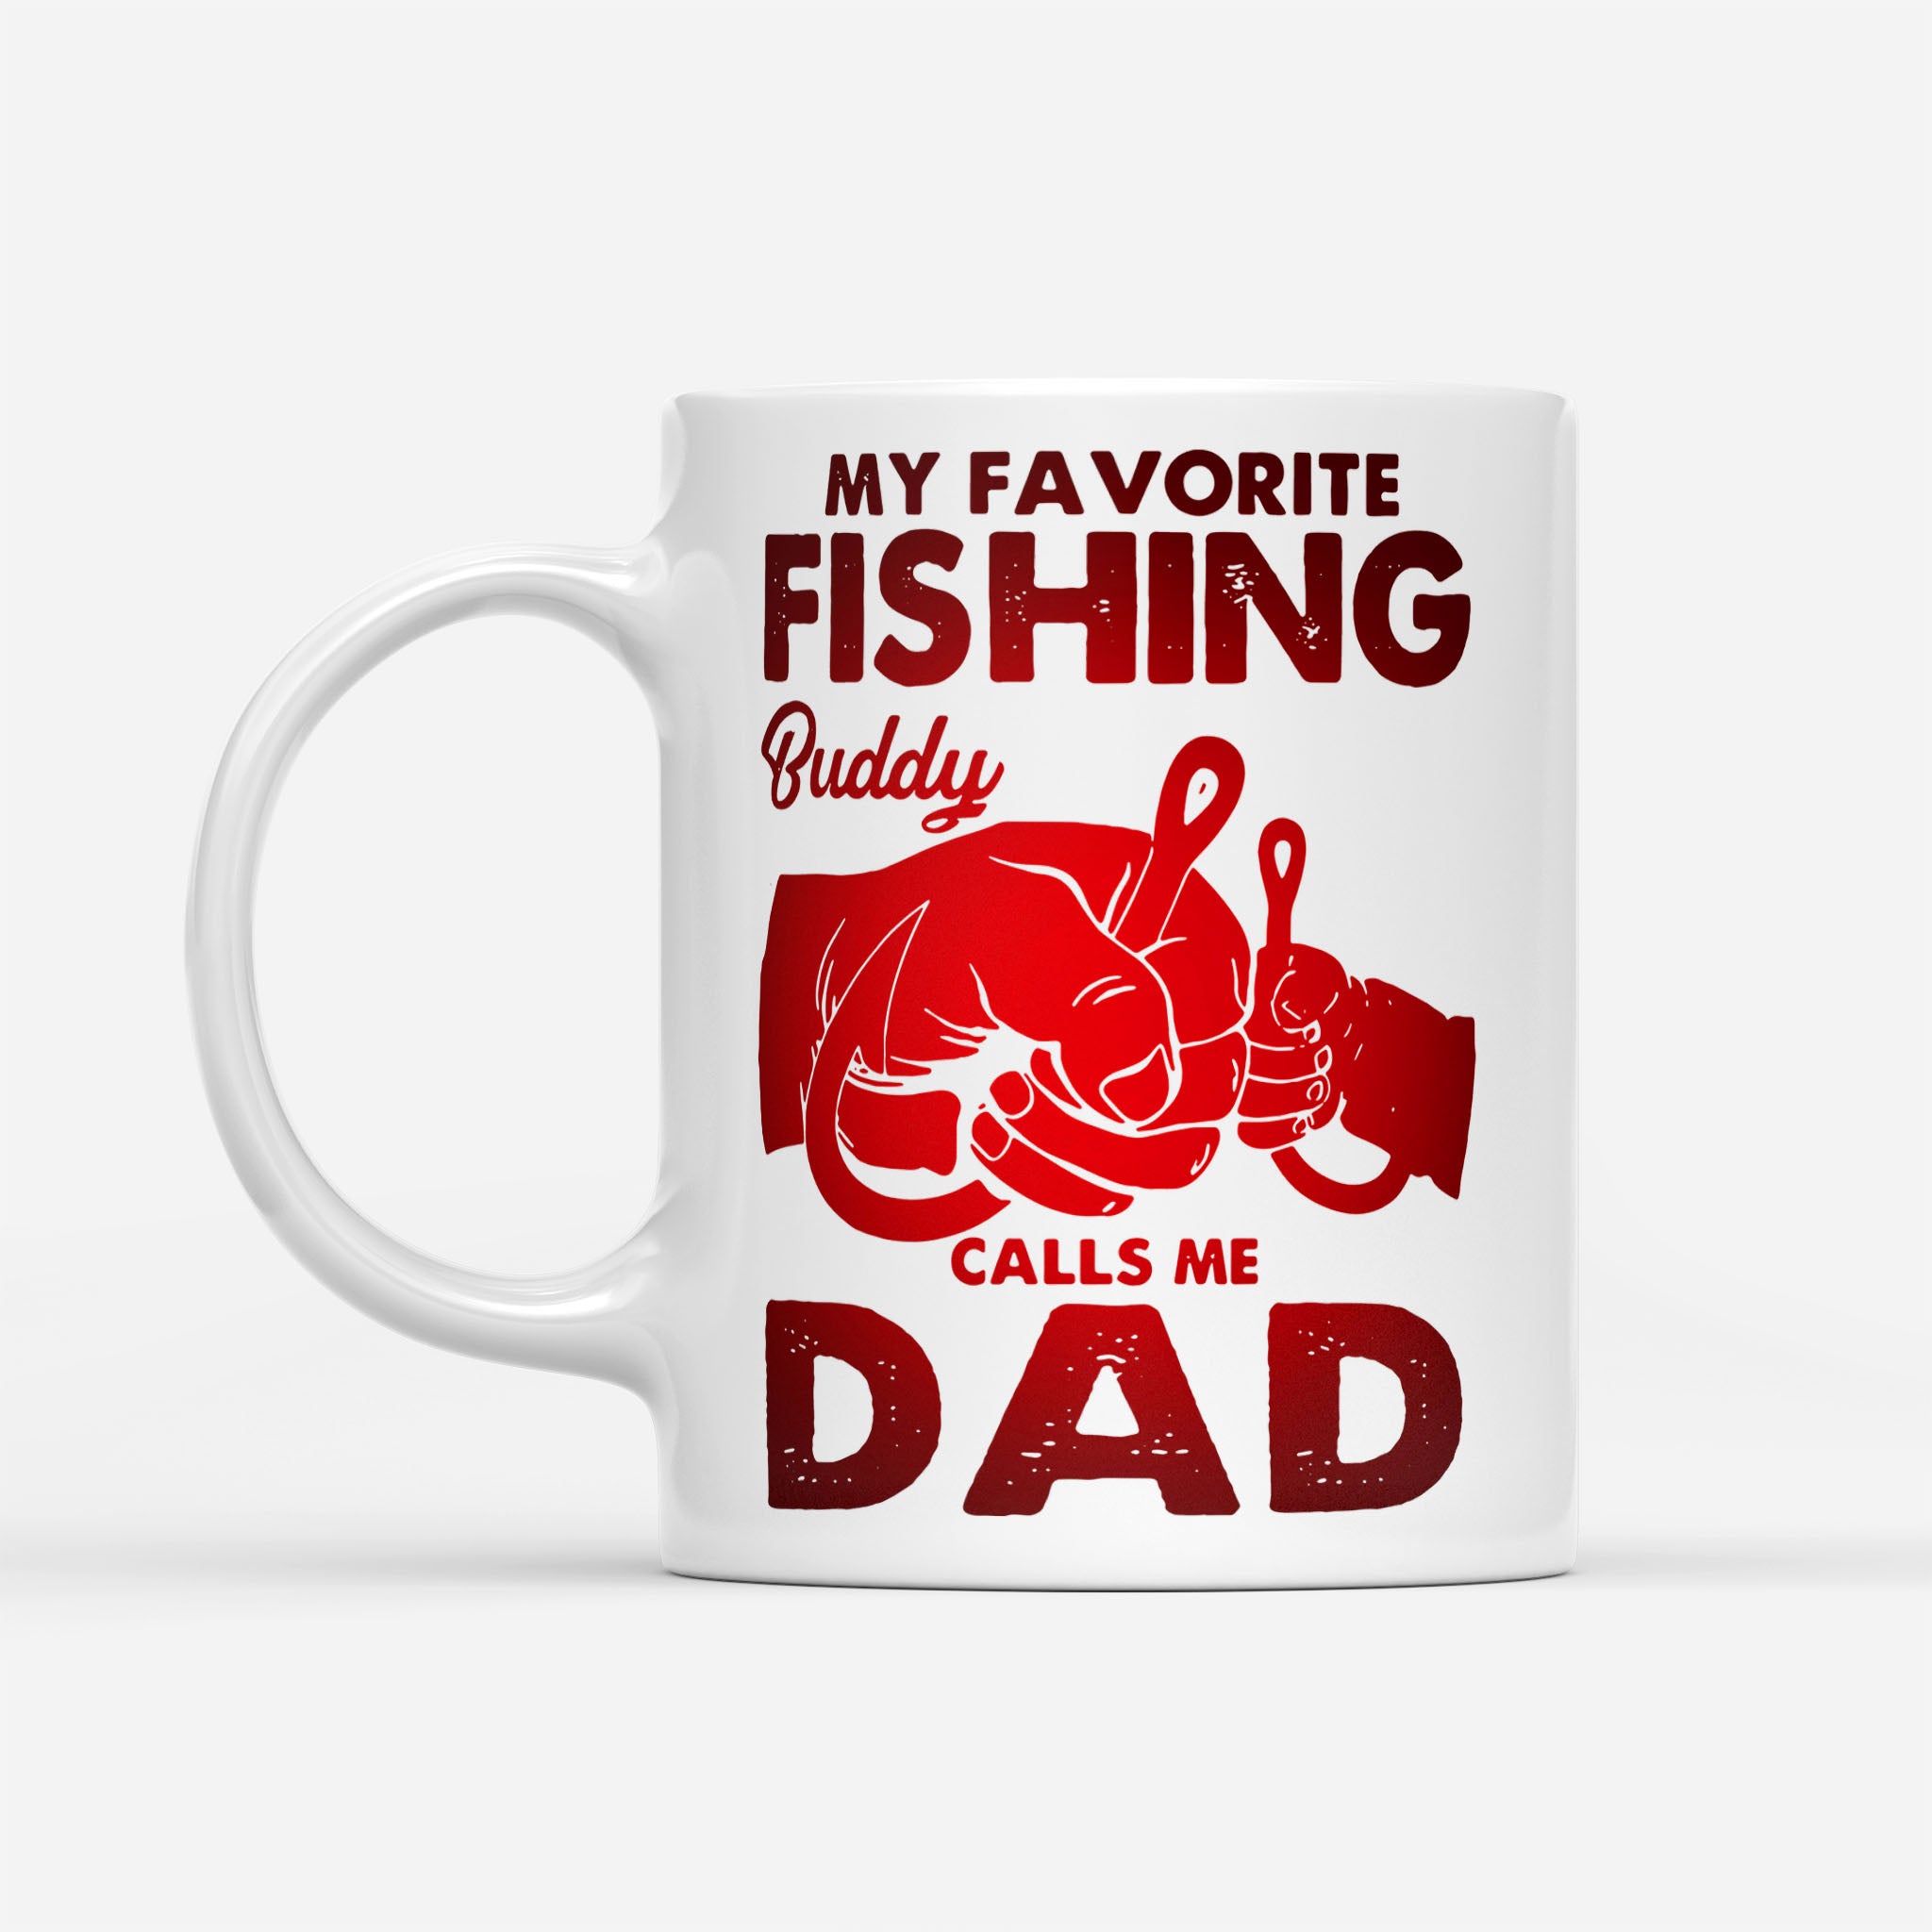 My Favorite Fishing Buddy Calls Me Dad - White Mug